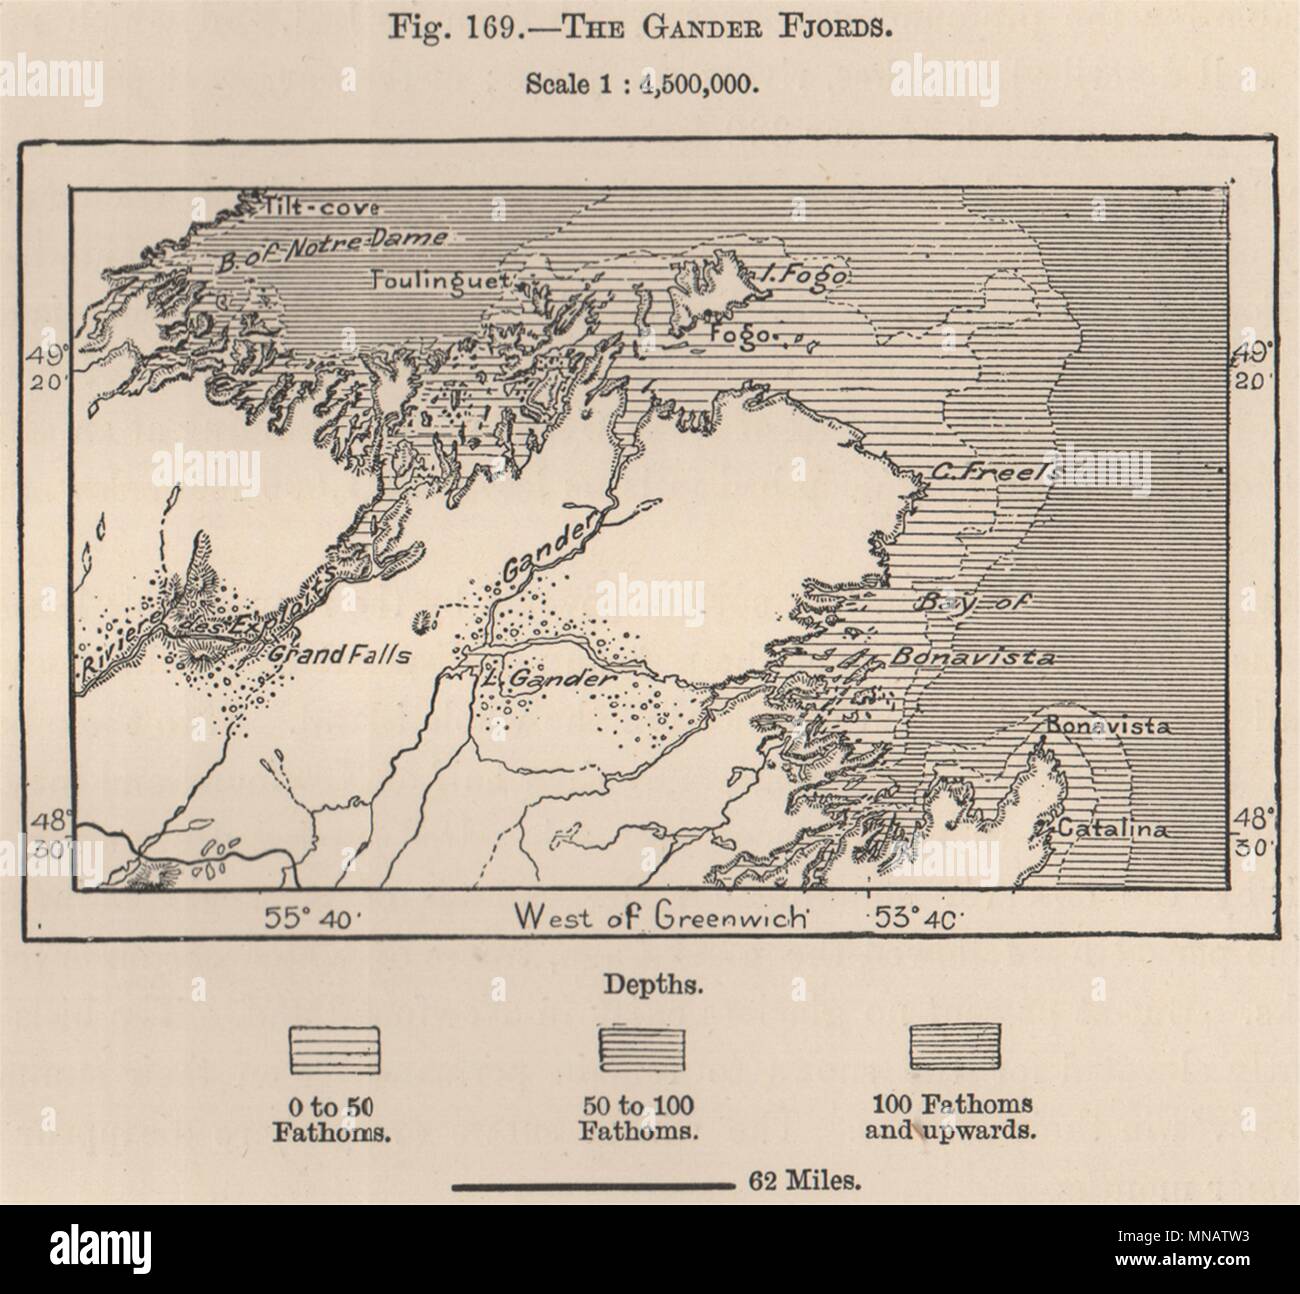 La Gander fjords. Canada 1885 ancienne carte graphique plan vintage Banque D'Images